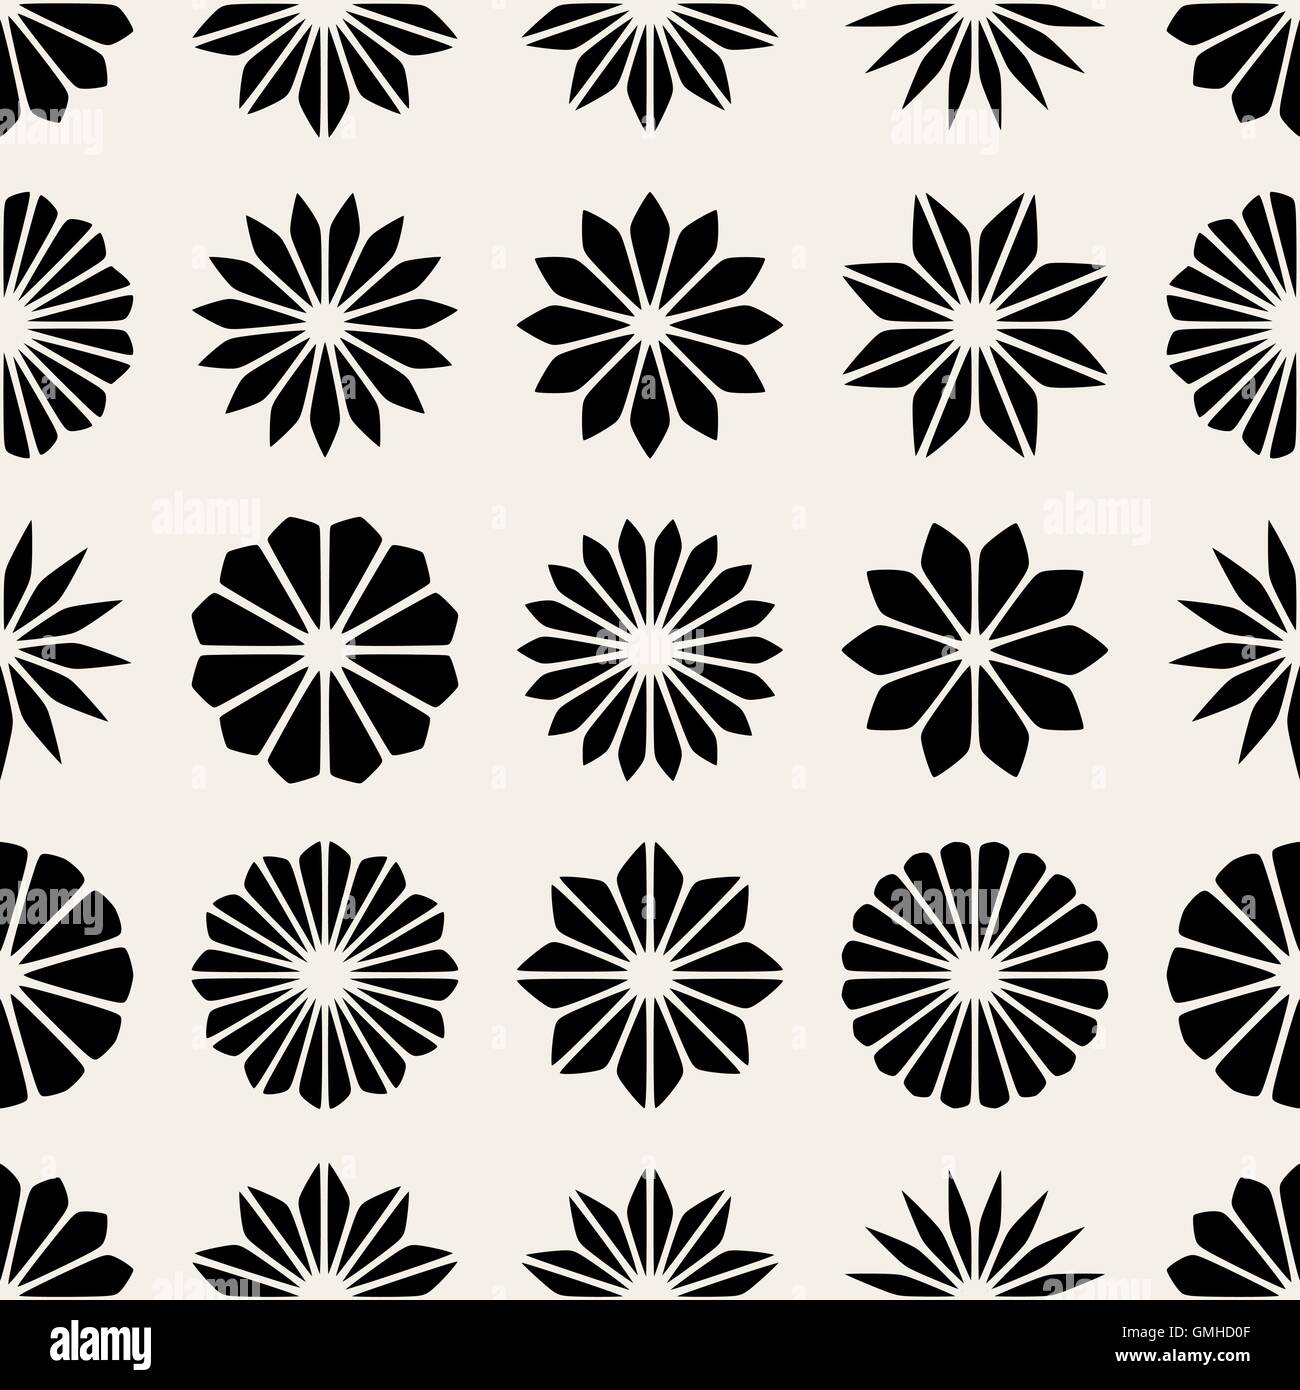 Vektor nahtlose schwarz-weiß florale Form Sterne Blütenmuster Stock Vektor